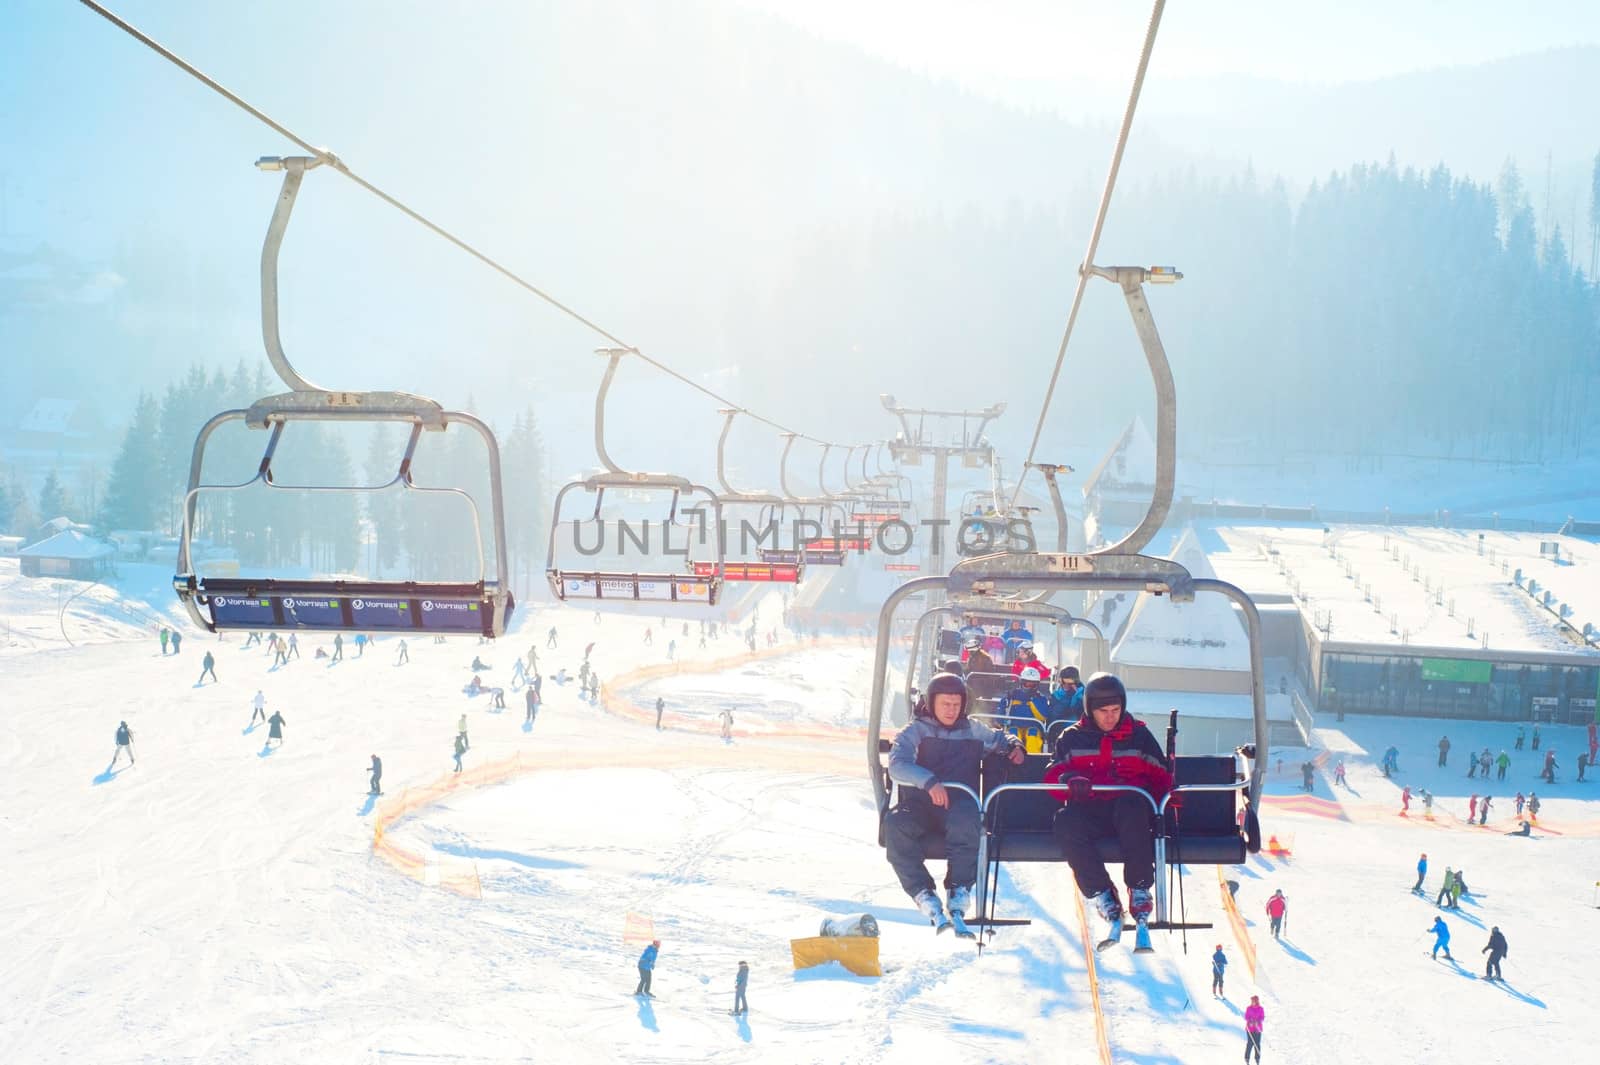 Ski-lift in Bukovel by joyfull